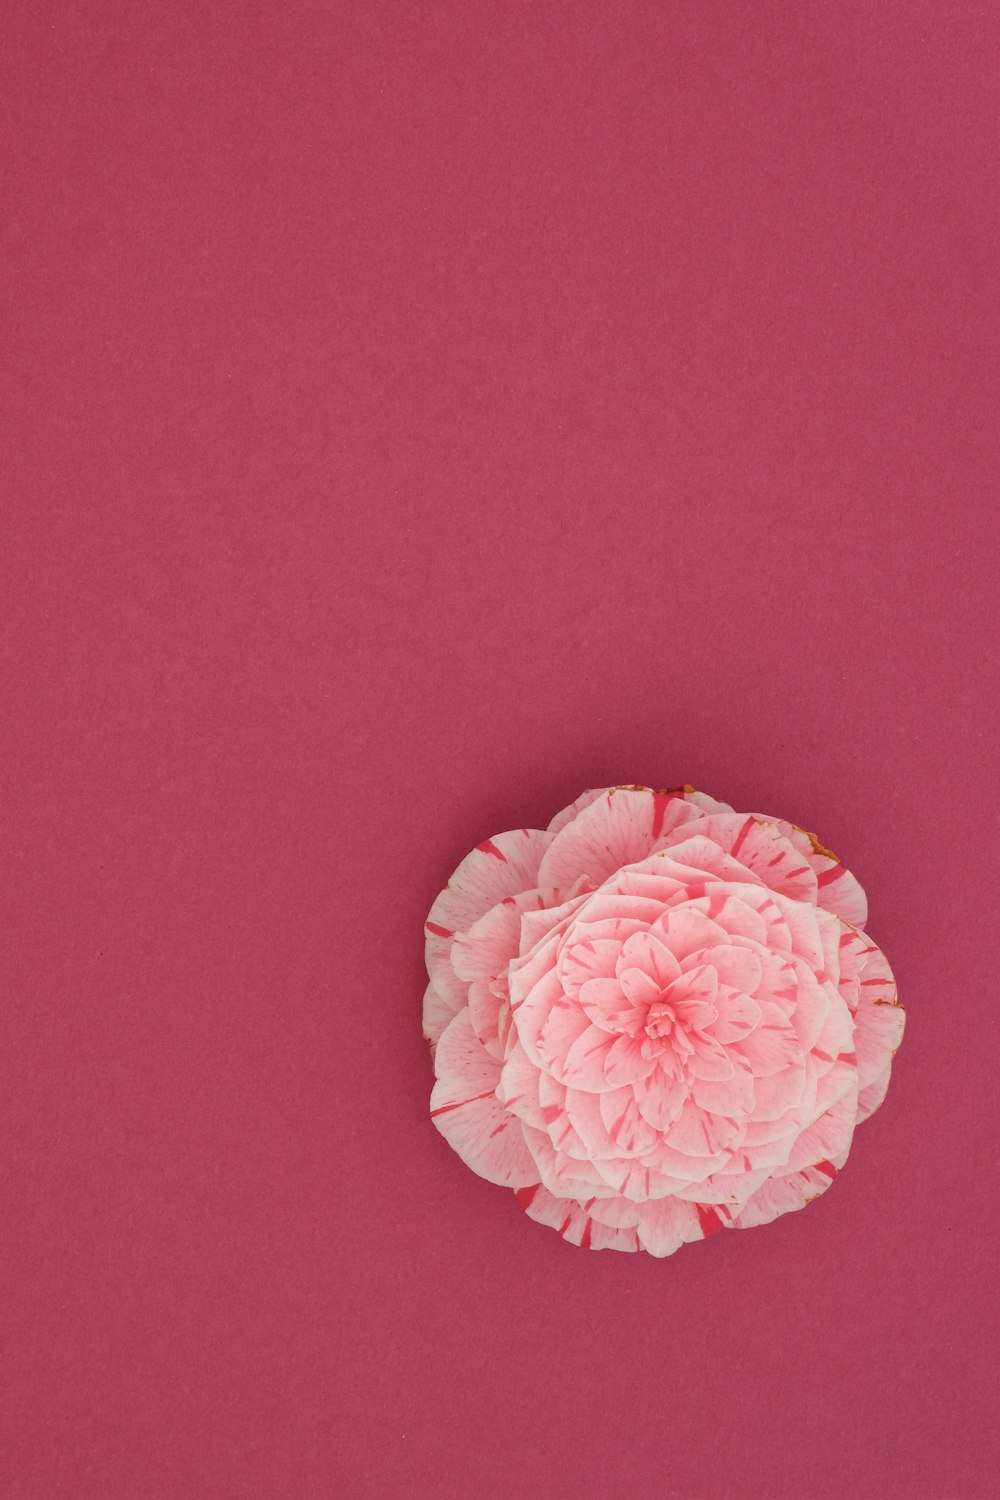 flor rosada sobre superficie rosada